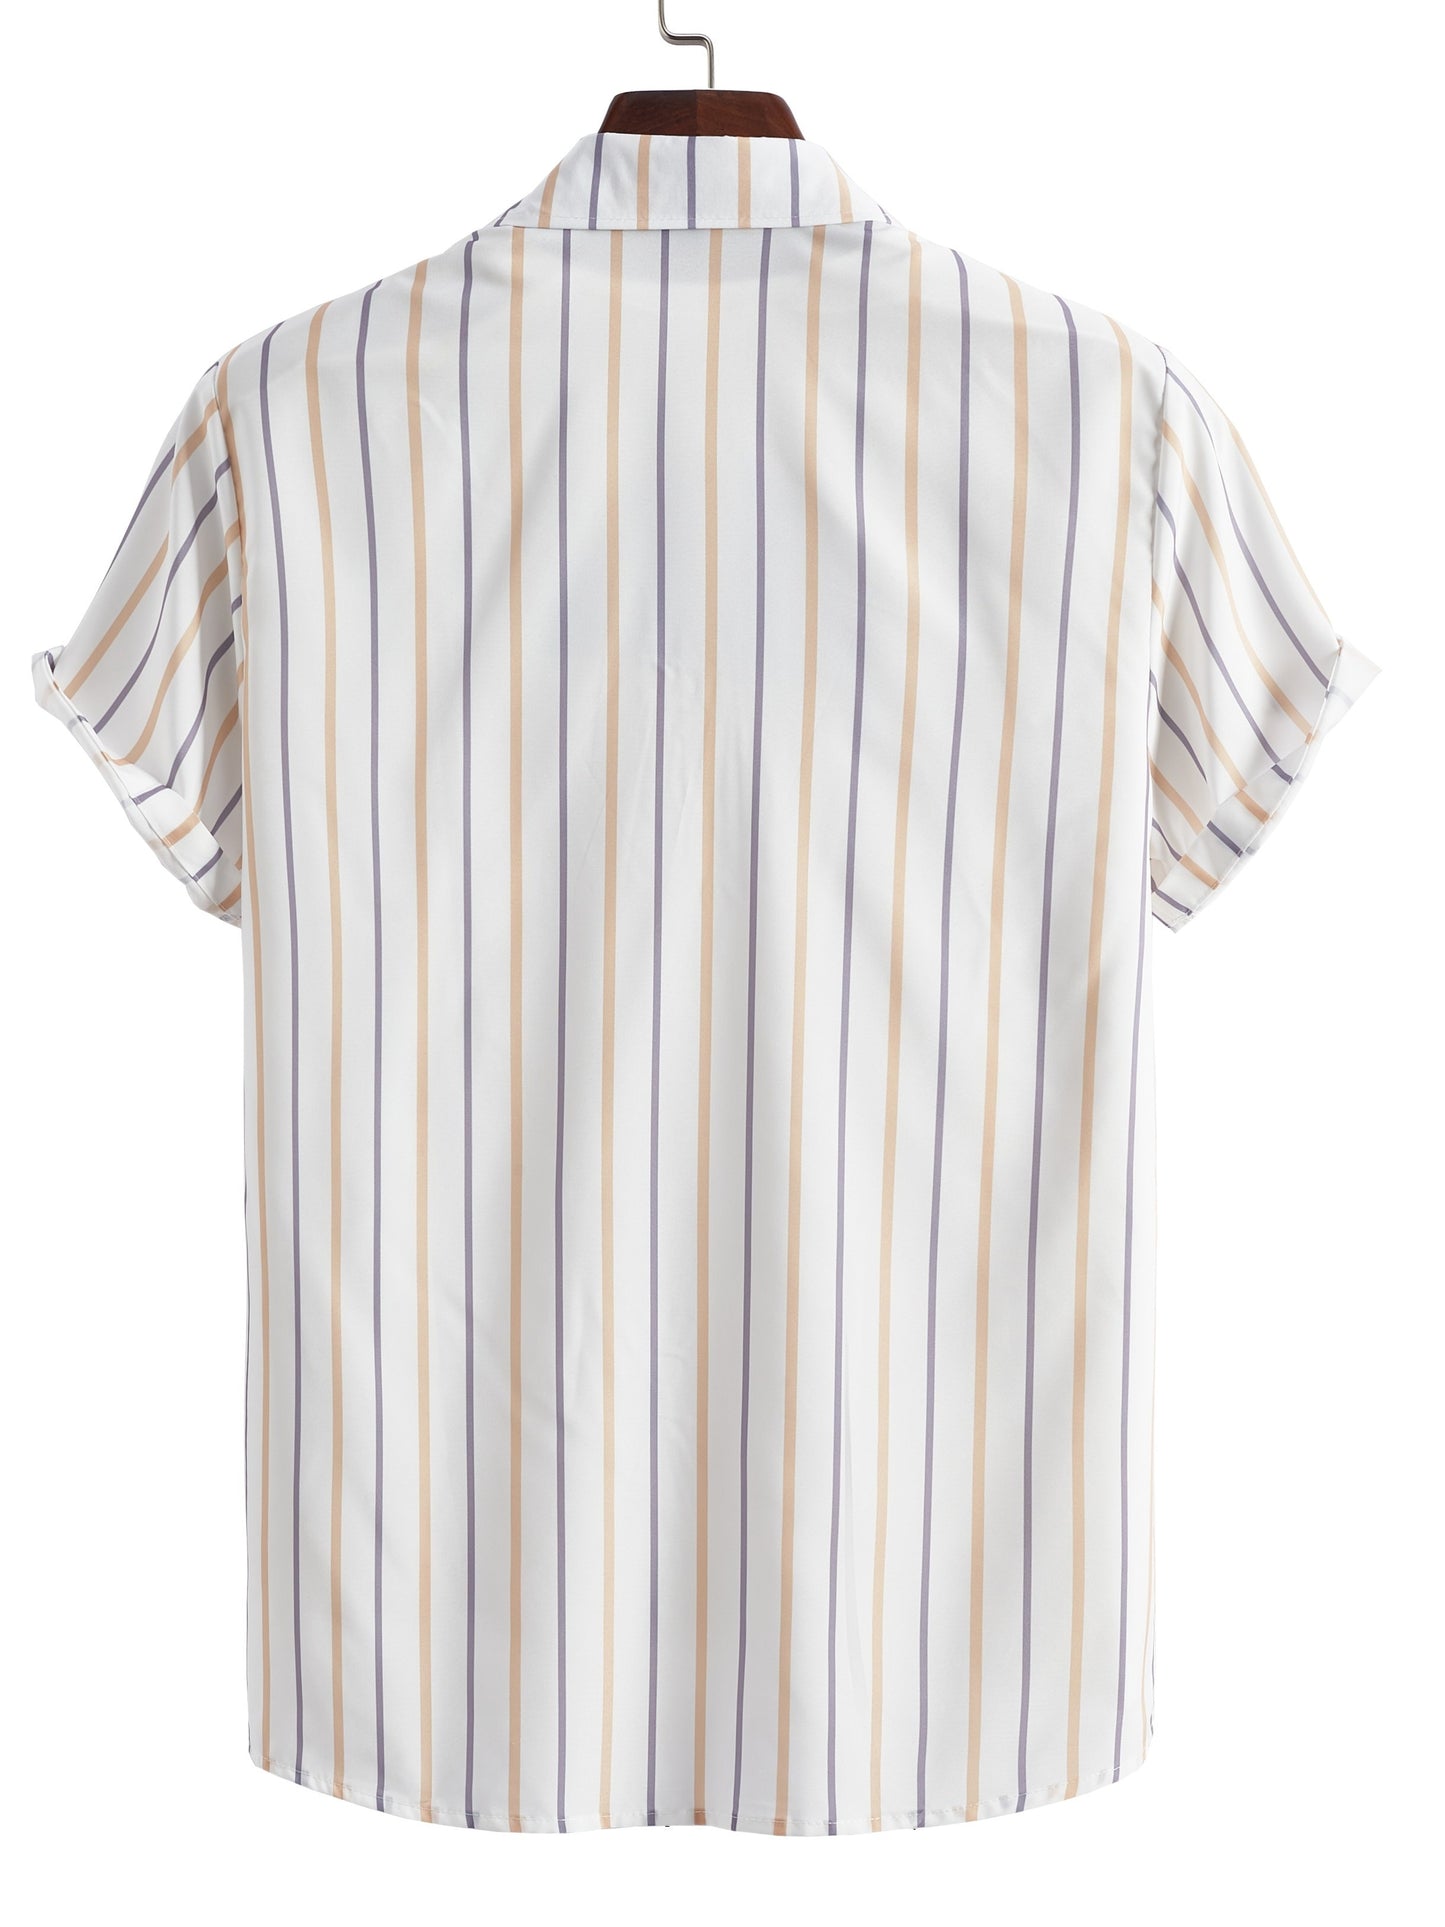 TM Men's Stripes Graphic Print Shirt For Summer